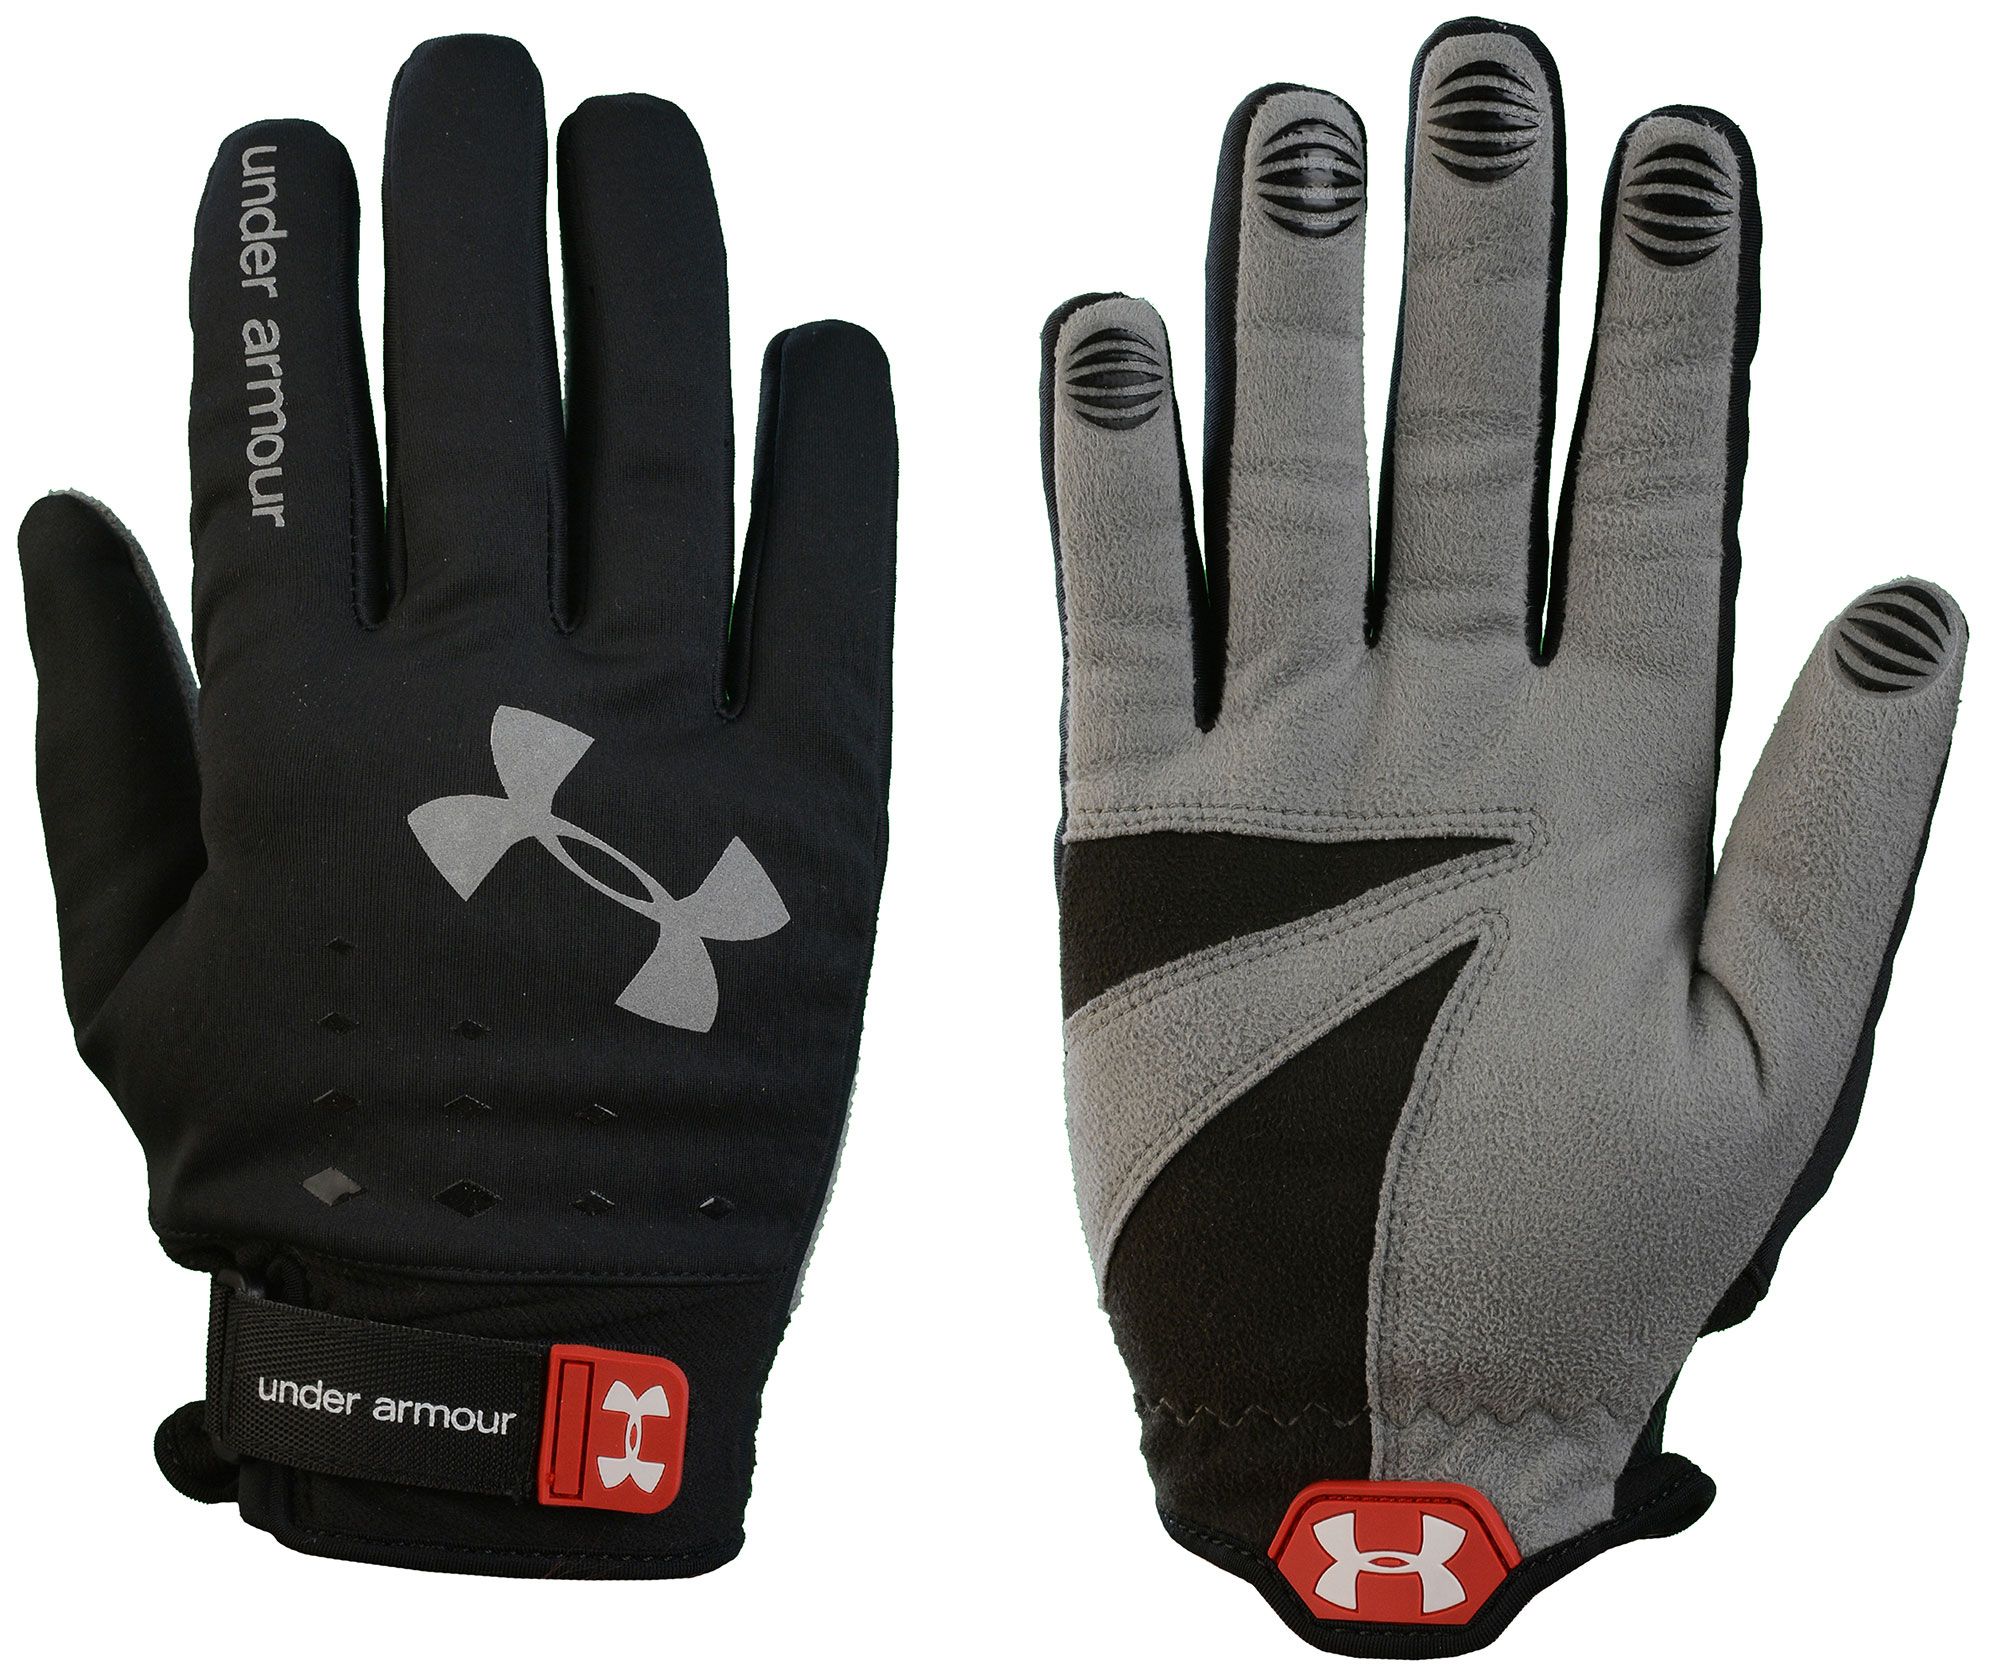 Sub Zero Lacrosse Gloves 